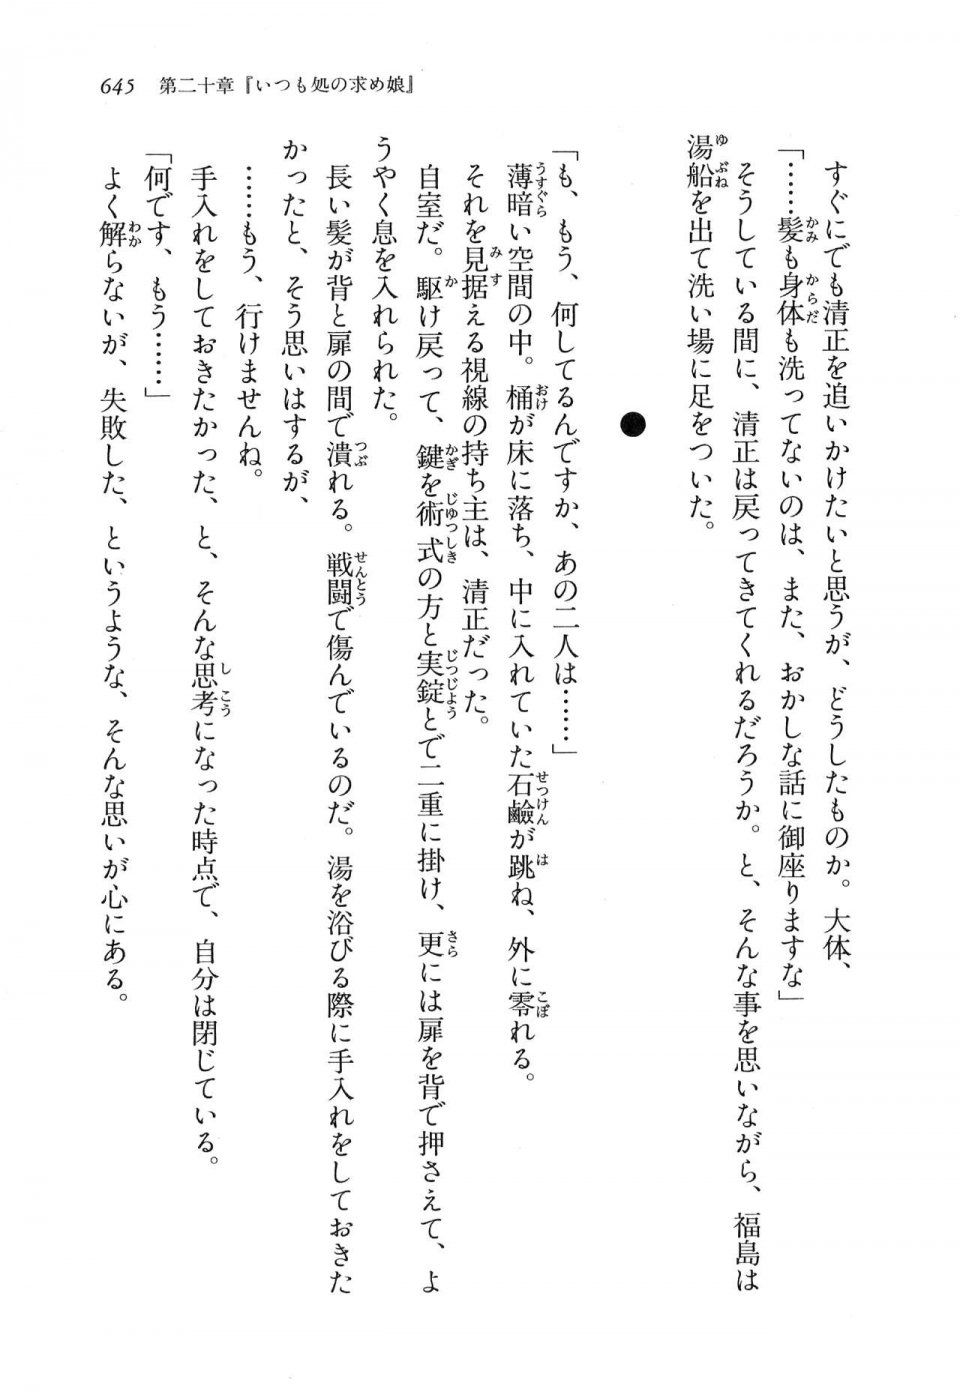 Kyoukai Senjou no Horizon LN Vol 16(7A) - Photo #645